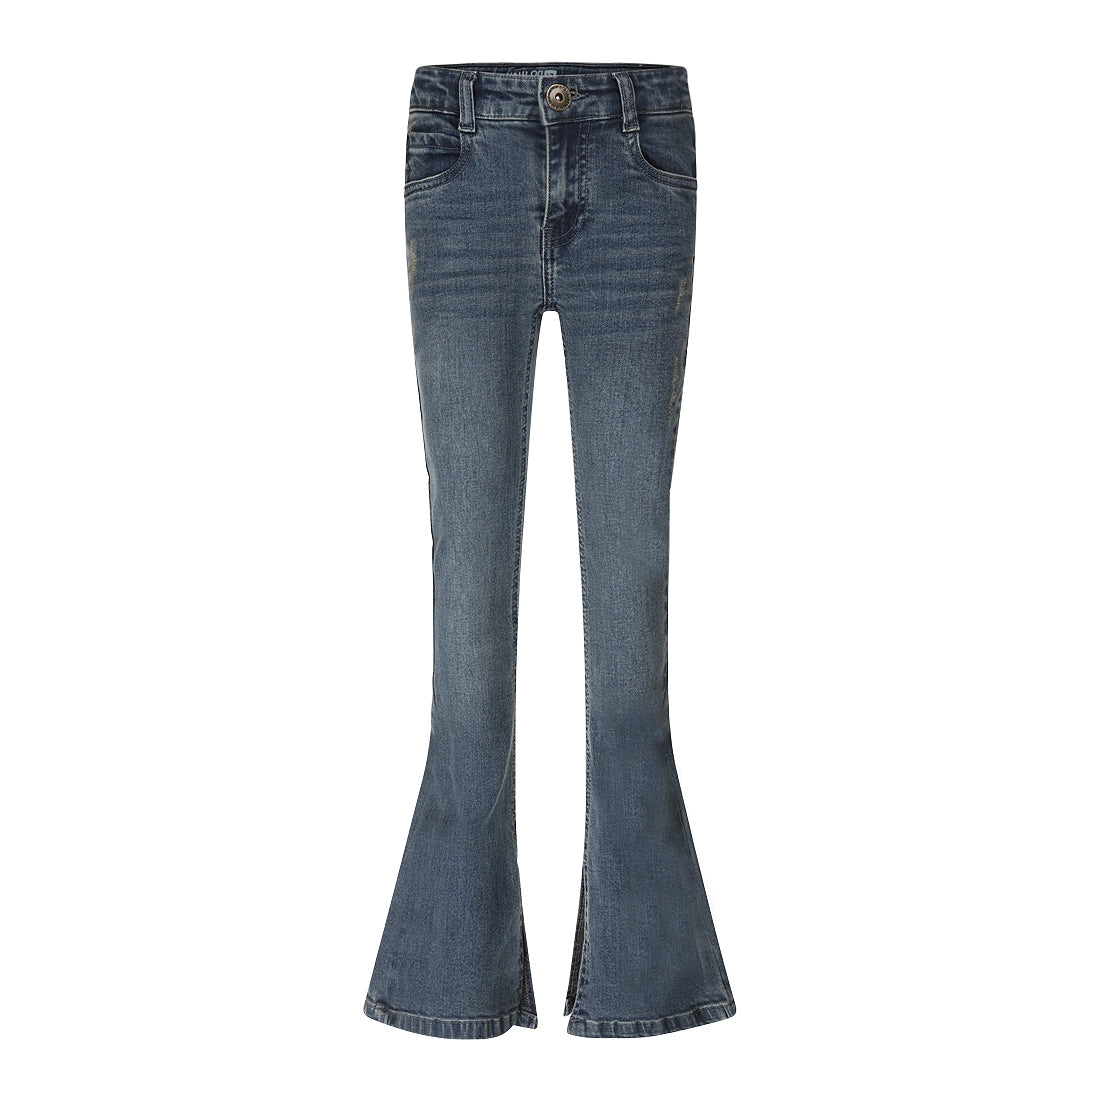 Meisjes Jeans flared van No Way Monday in de kleur Blue jeans in maat 164.